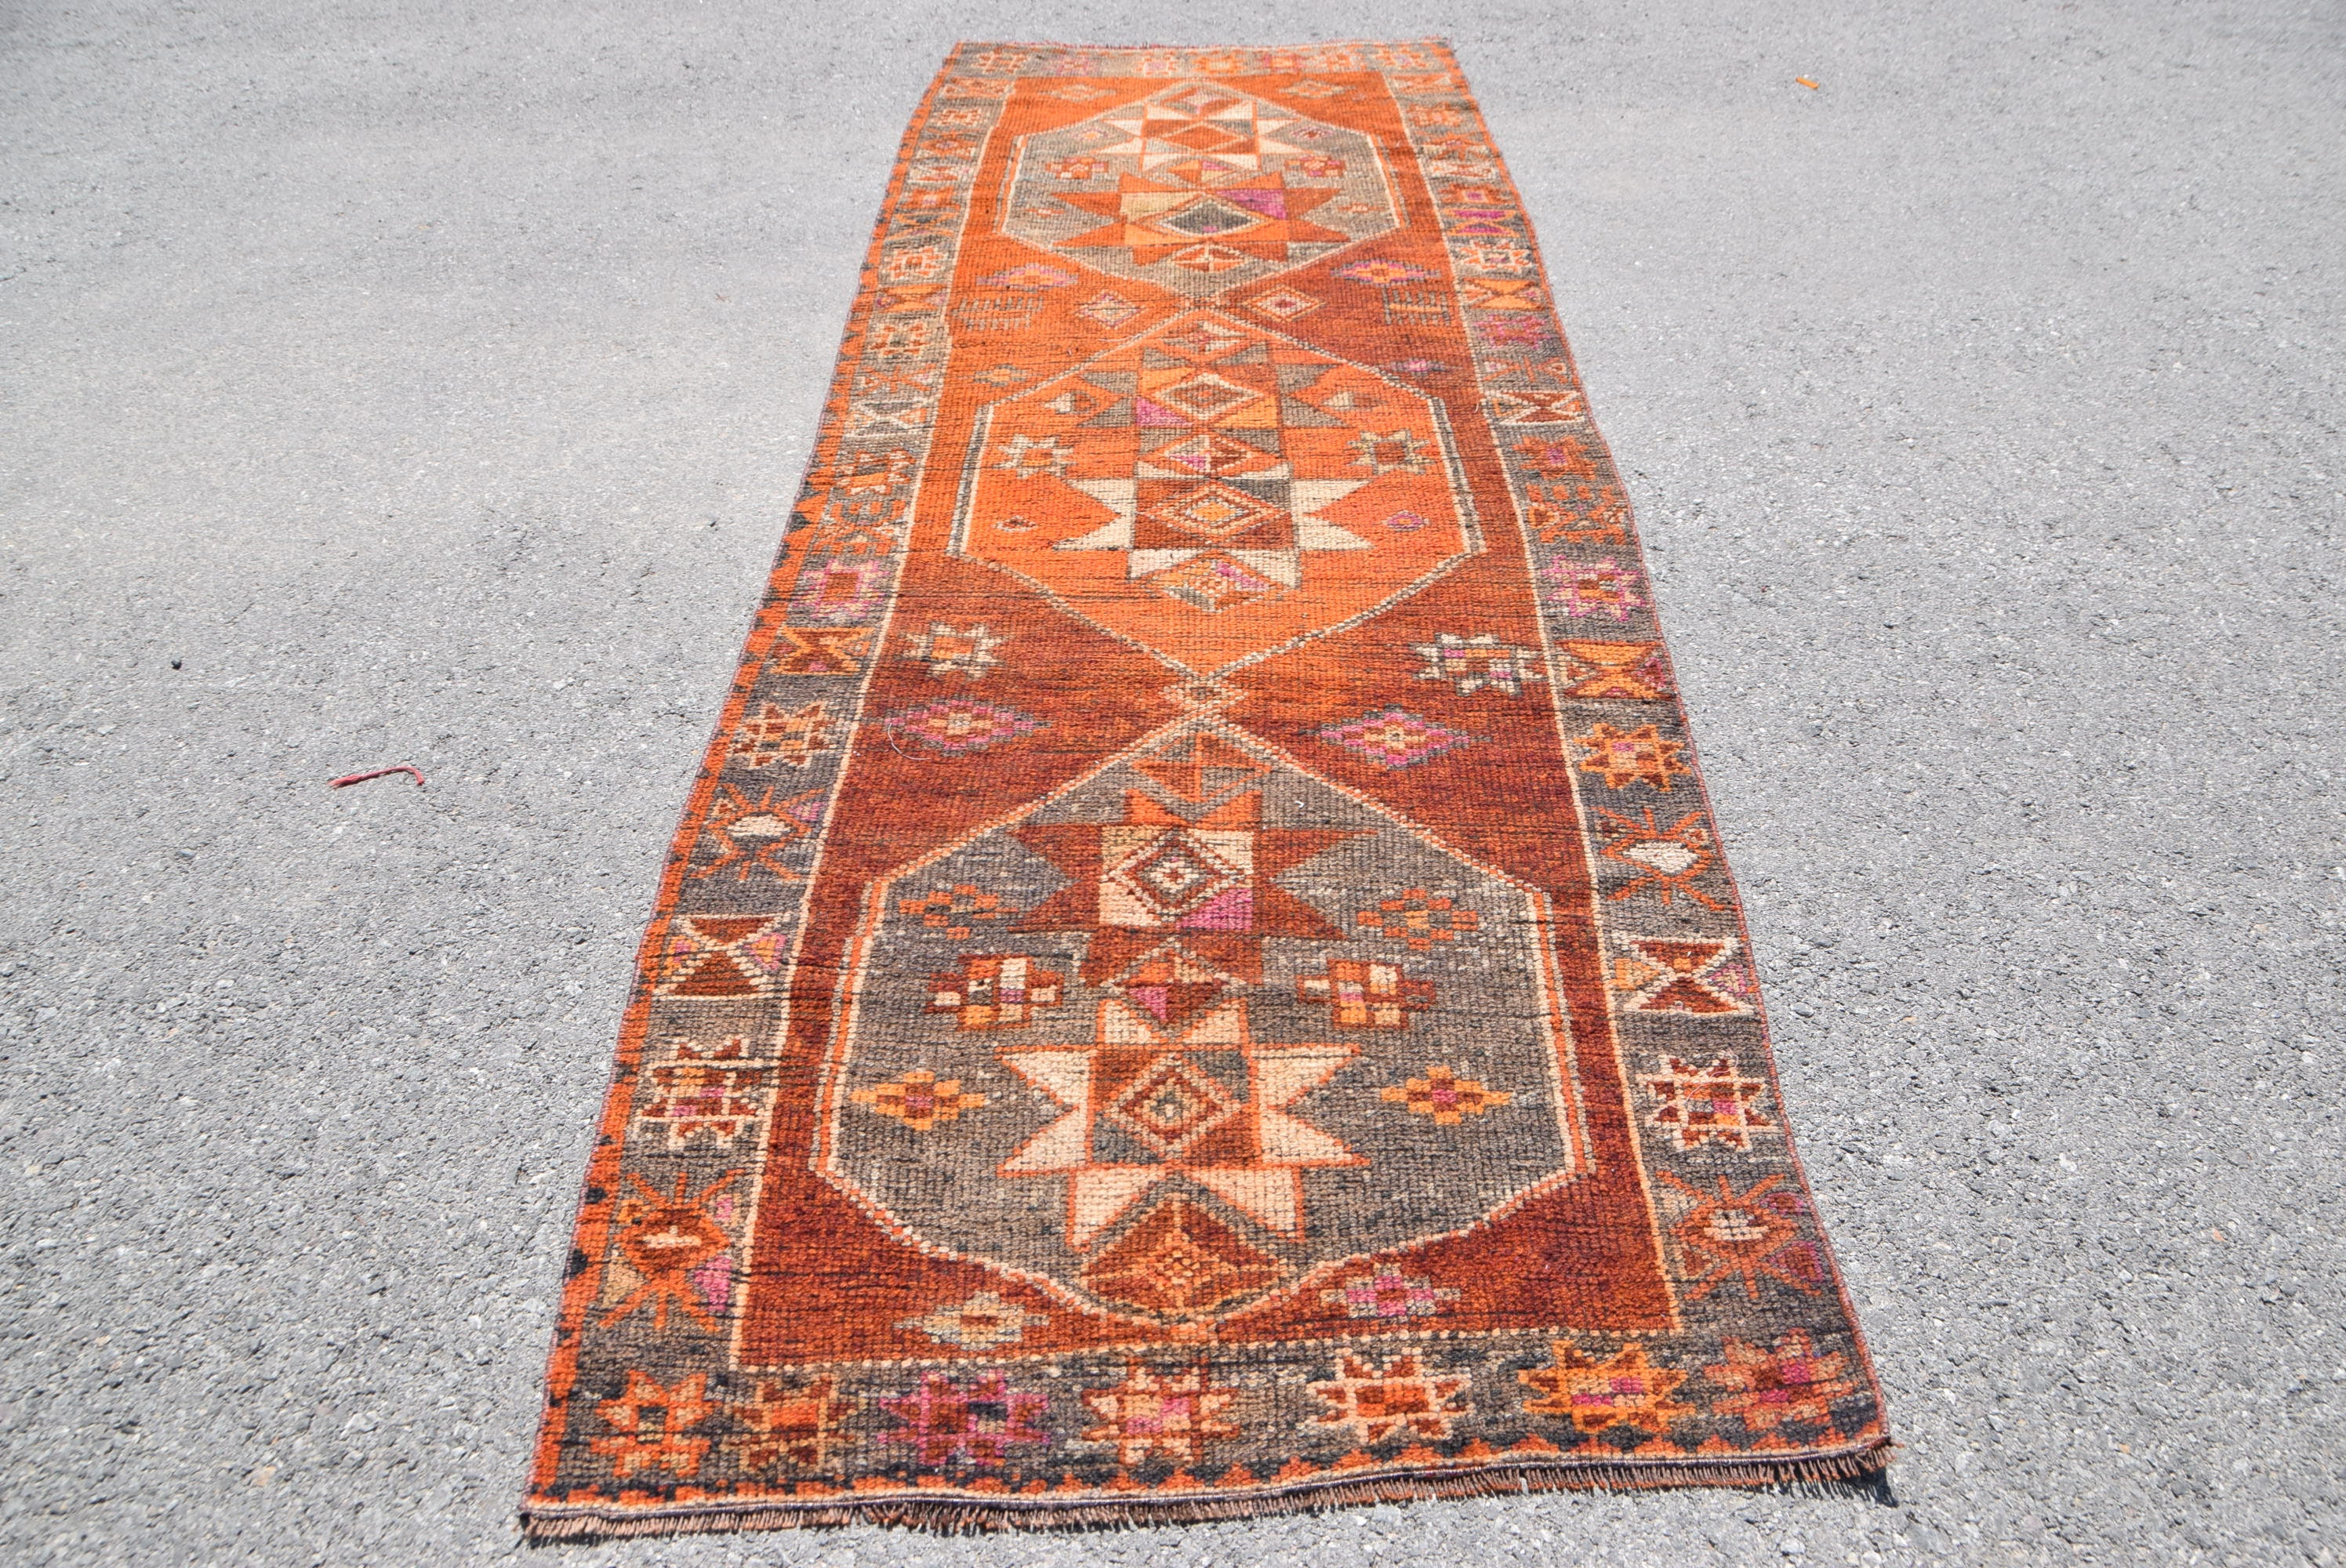 Herki Rug Vintage Rug Antique Rug Turkish Rug Decorative Stair Rug 36x129 inches Orange Carpet 8279 Runner Carpet